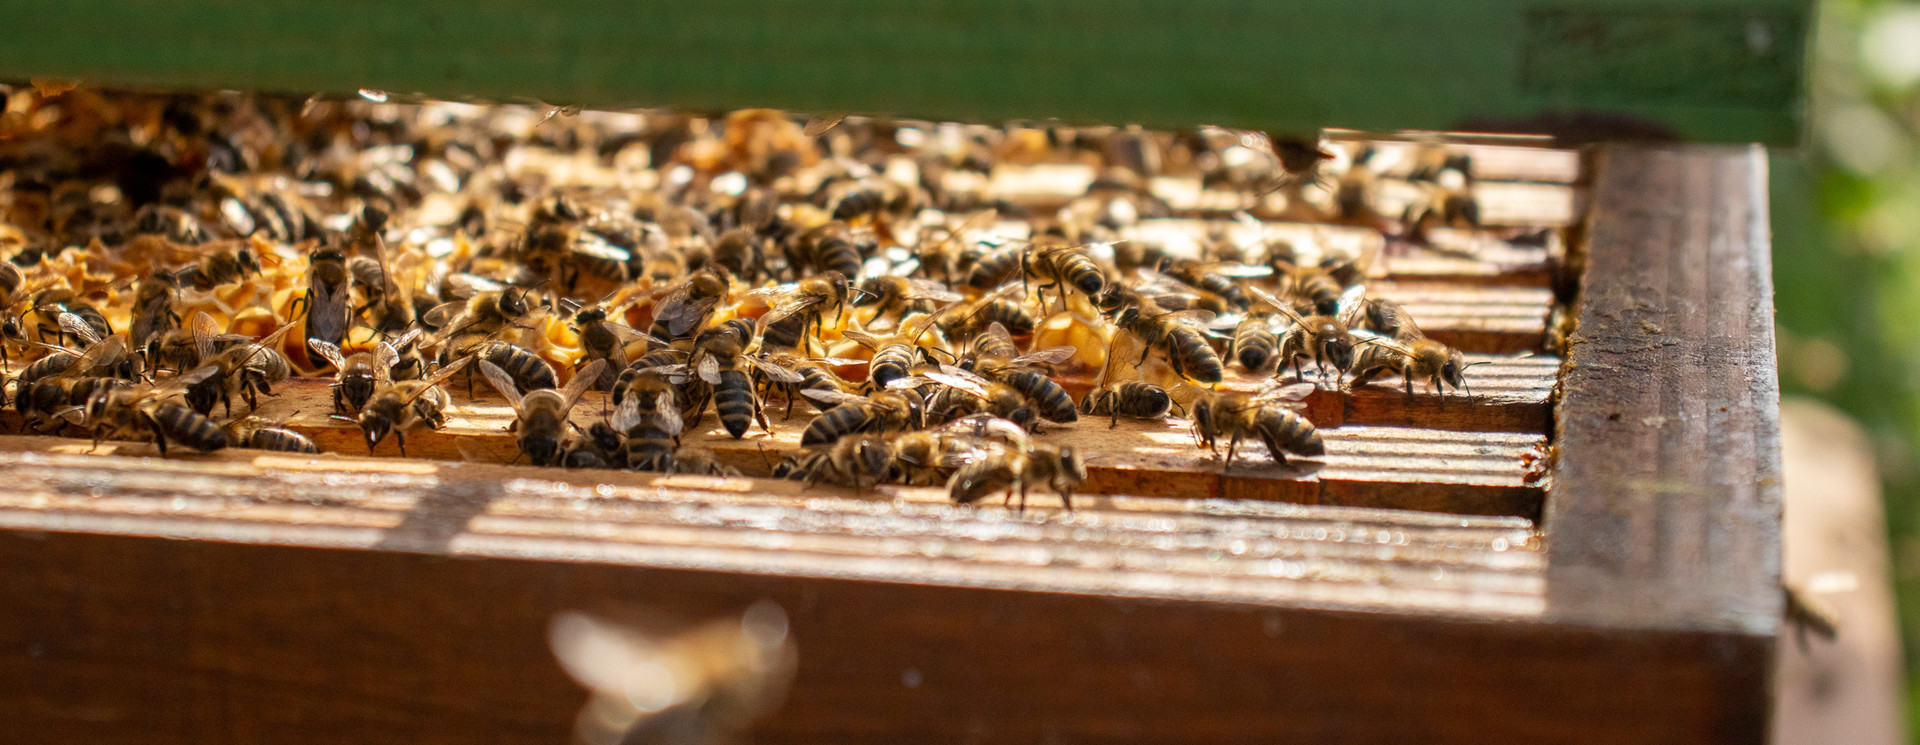 Matériel d'apiculture